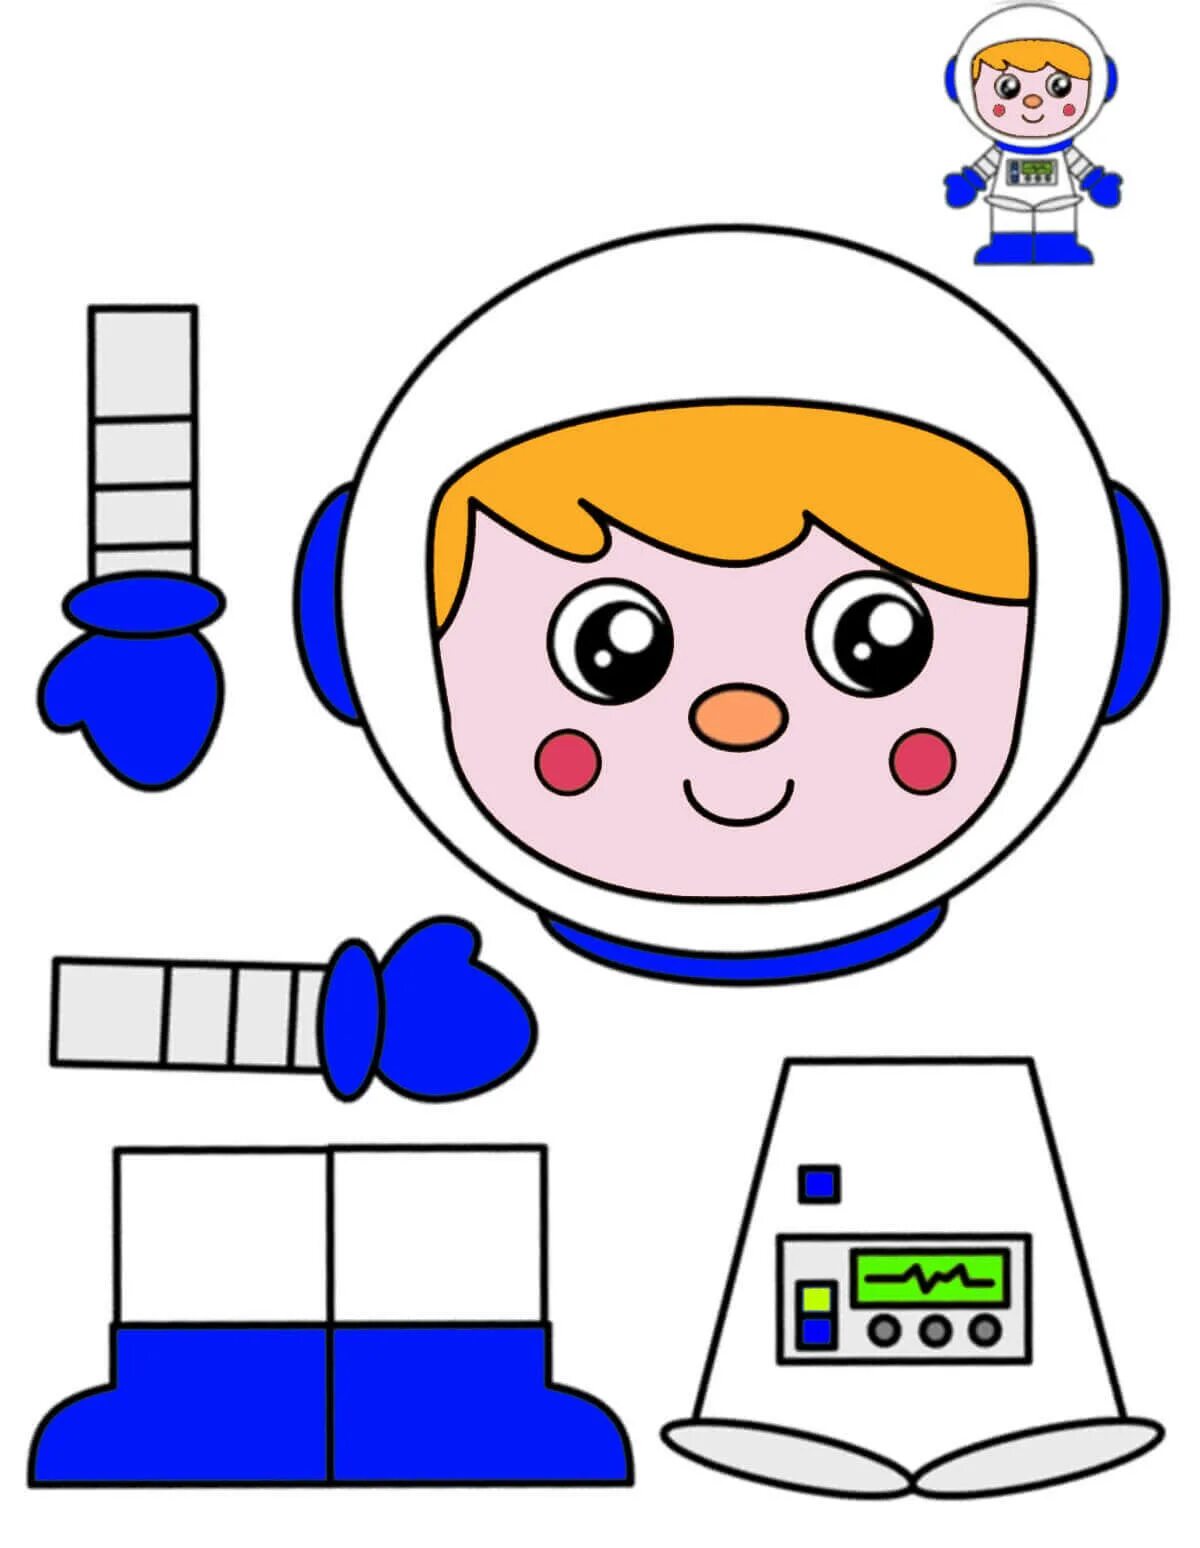 Шаблон космонавта для аппликации для детей. Аппликация космонавт. Космонавт аппликация для детей. Аппликация для детей космонавтика.